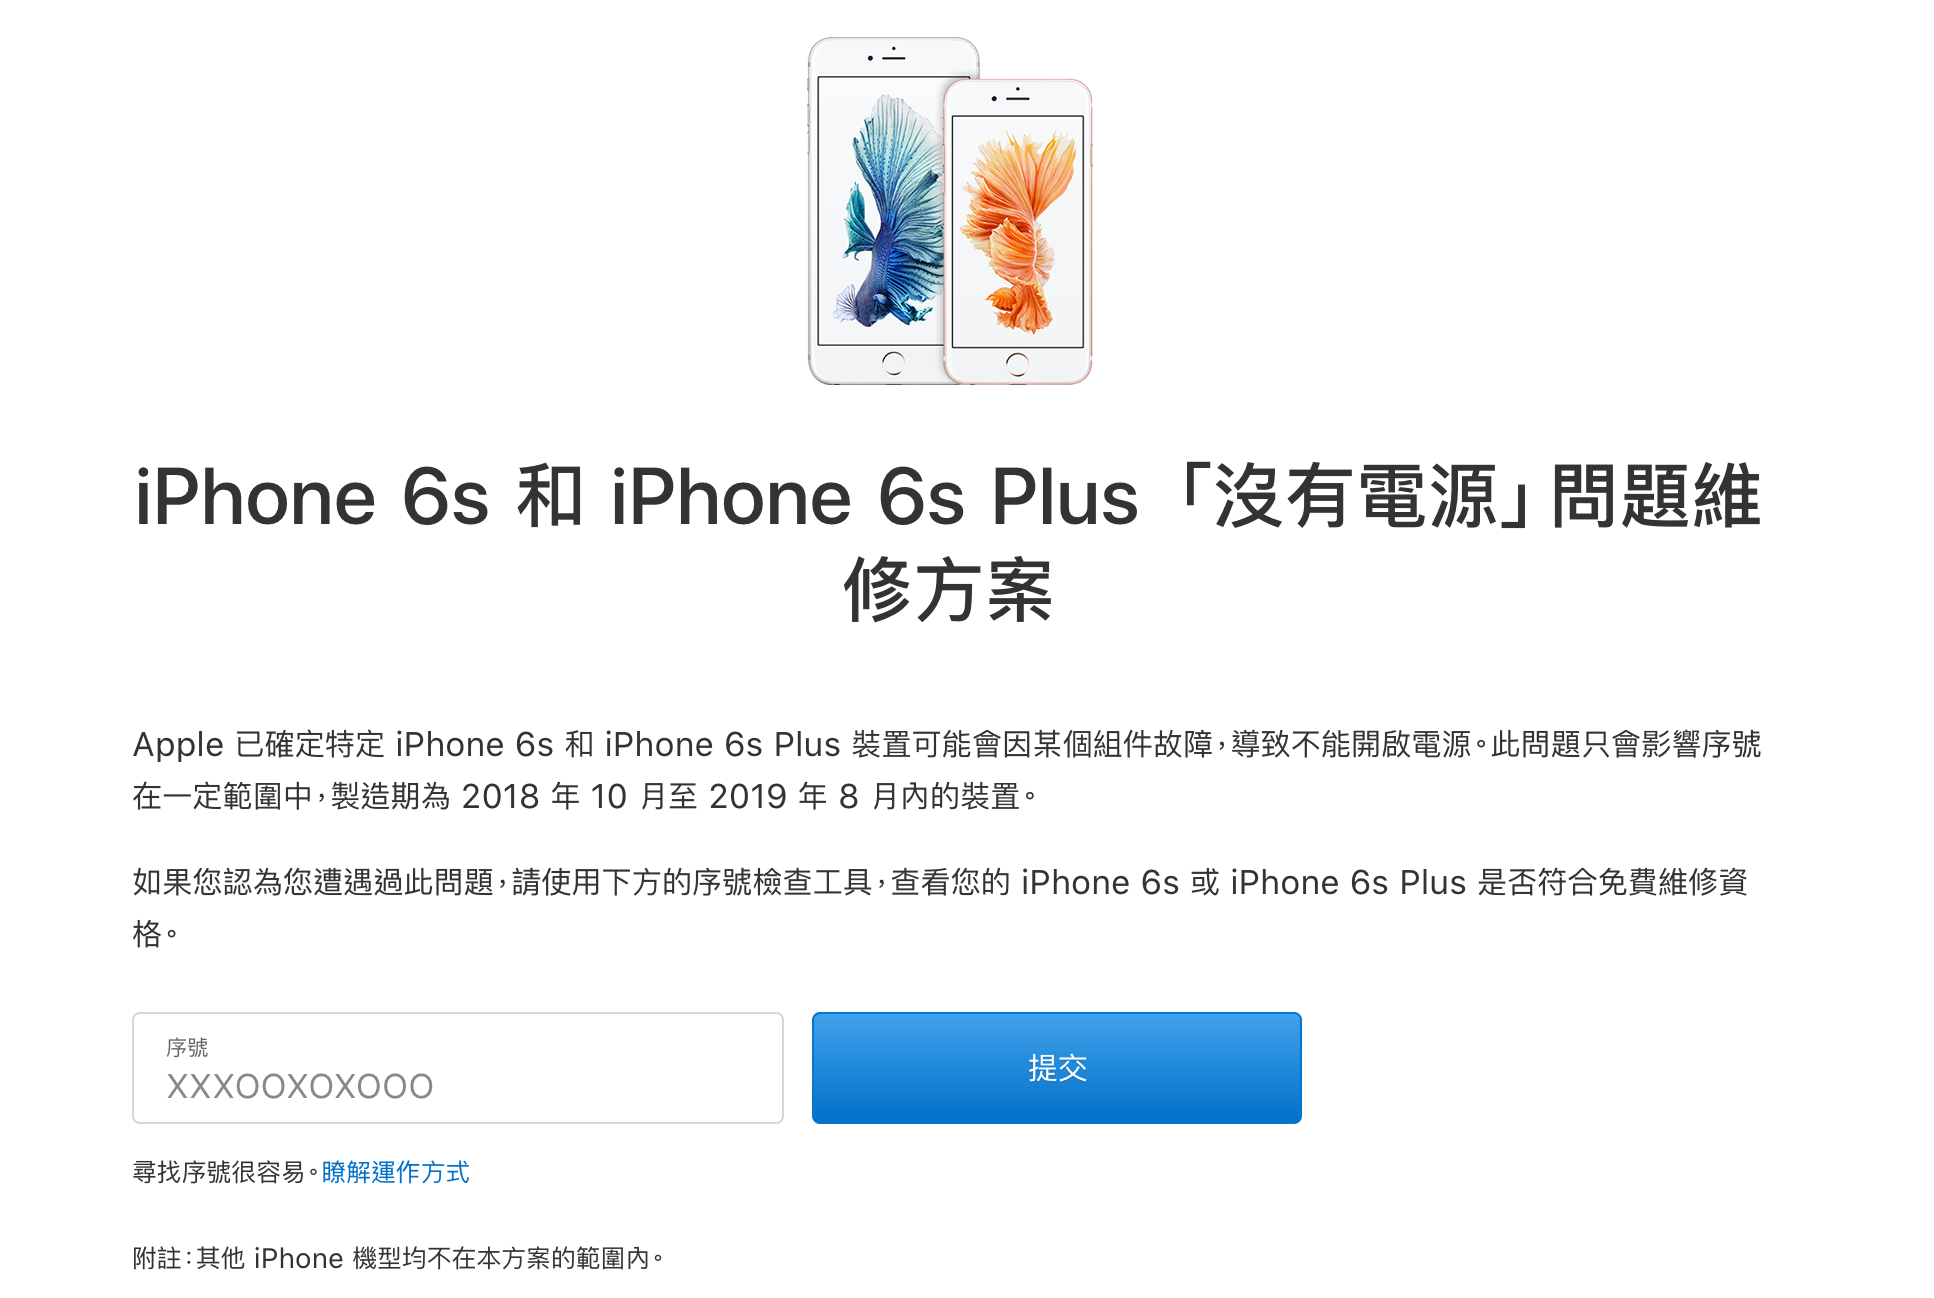 快檢查你的iPhone 6s系列能否正常開機，蘋果釋出免費的維修服務啦！